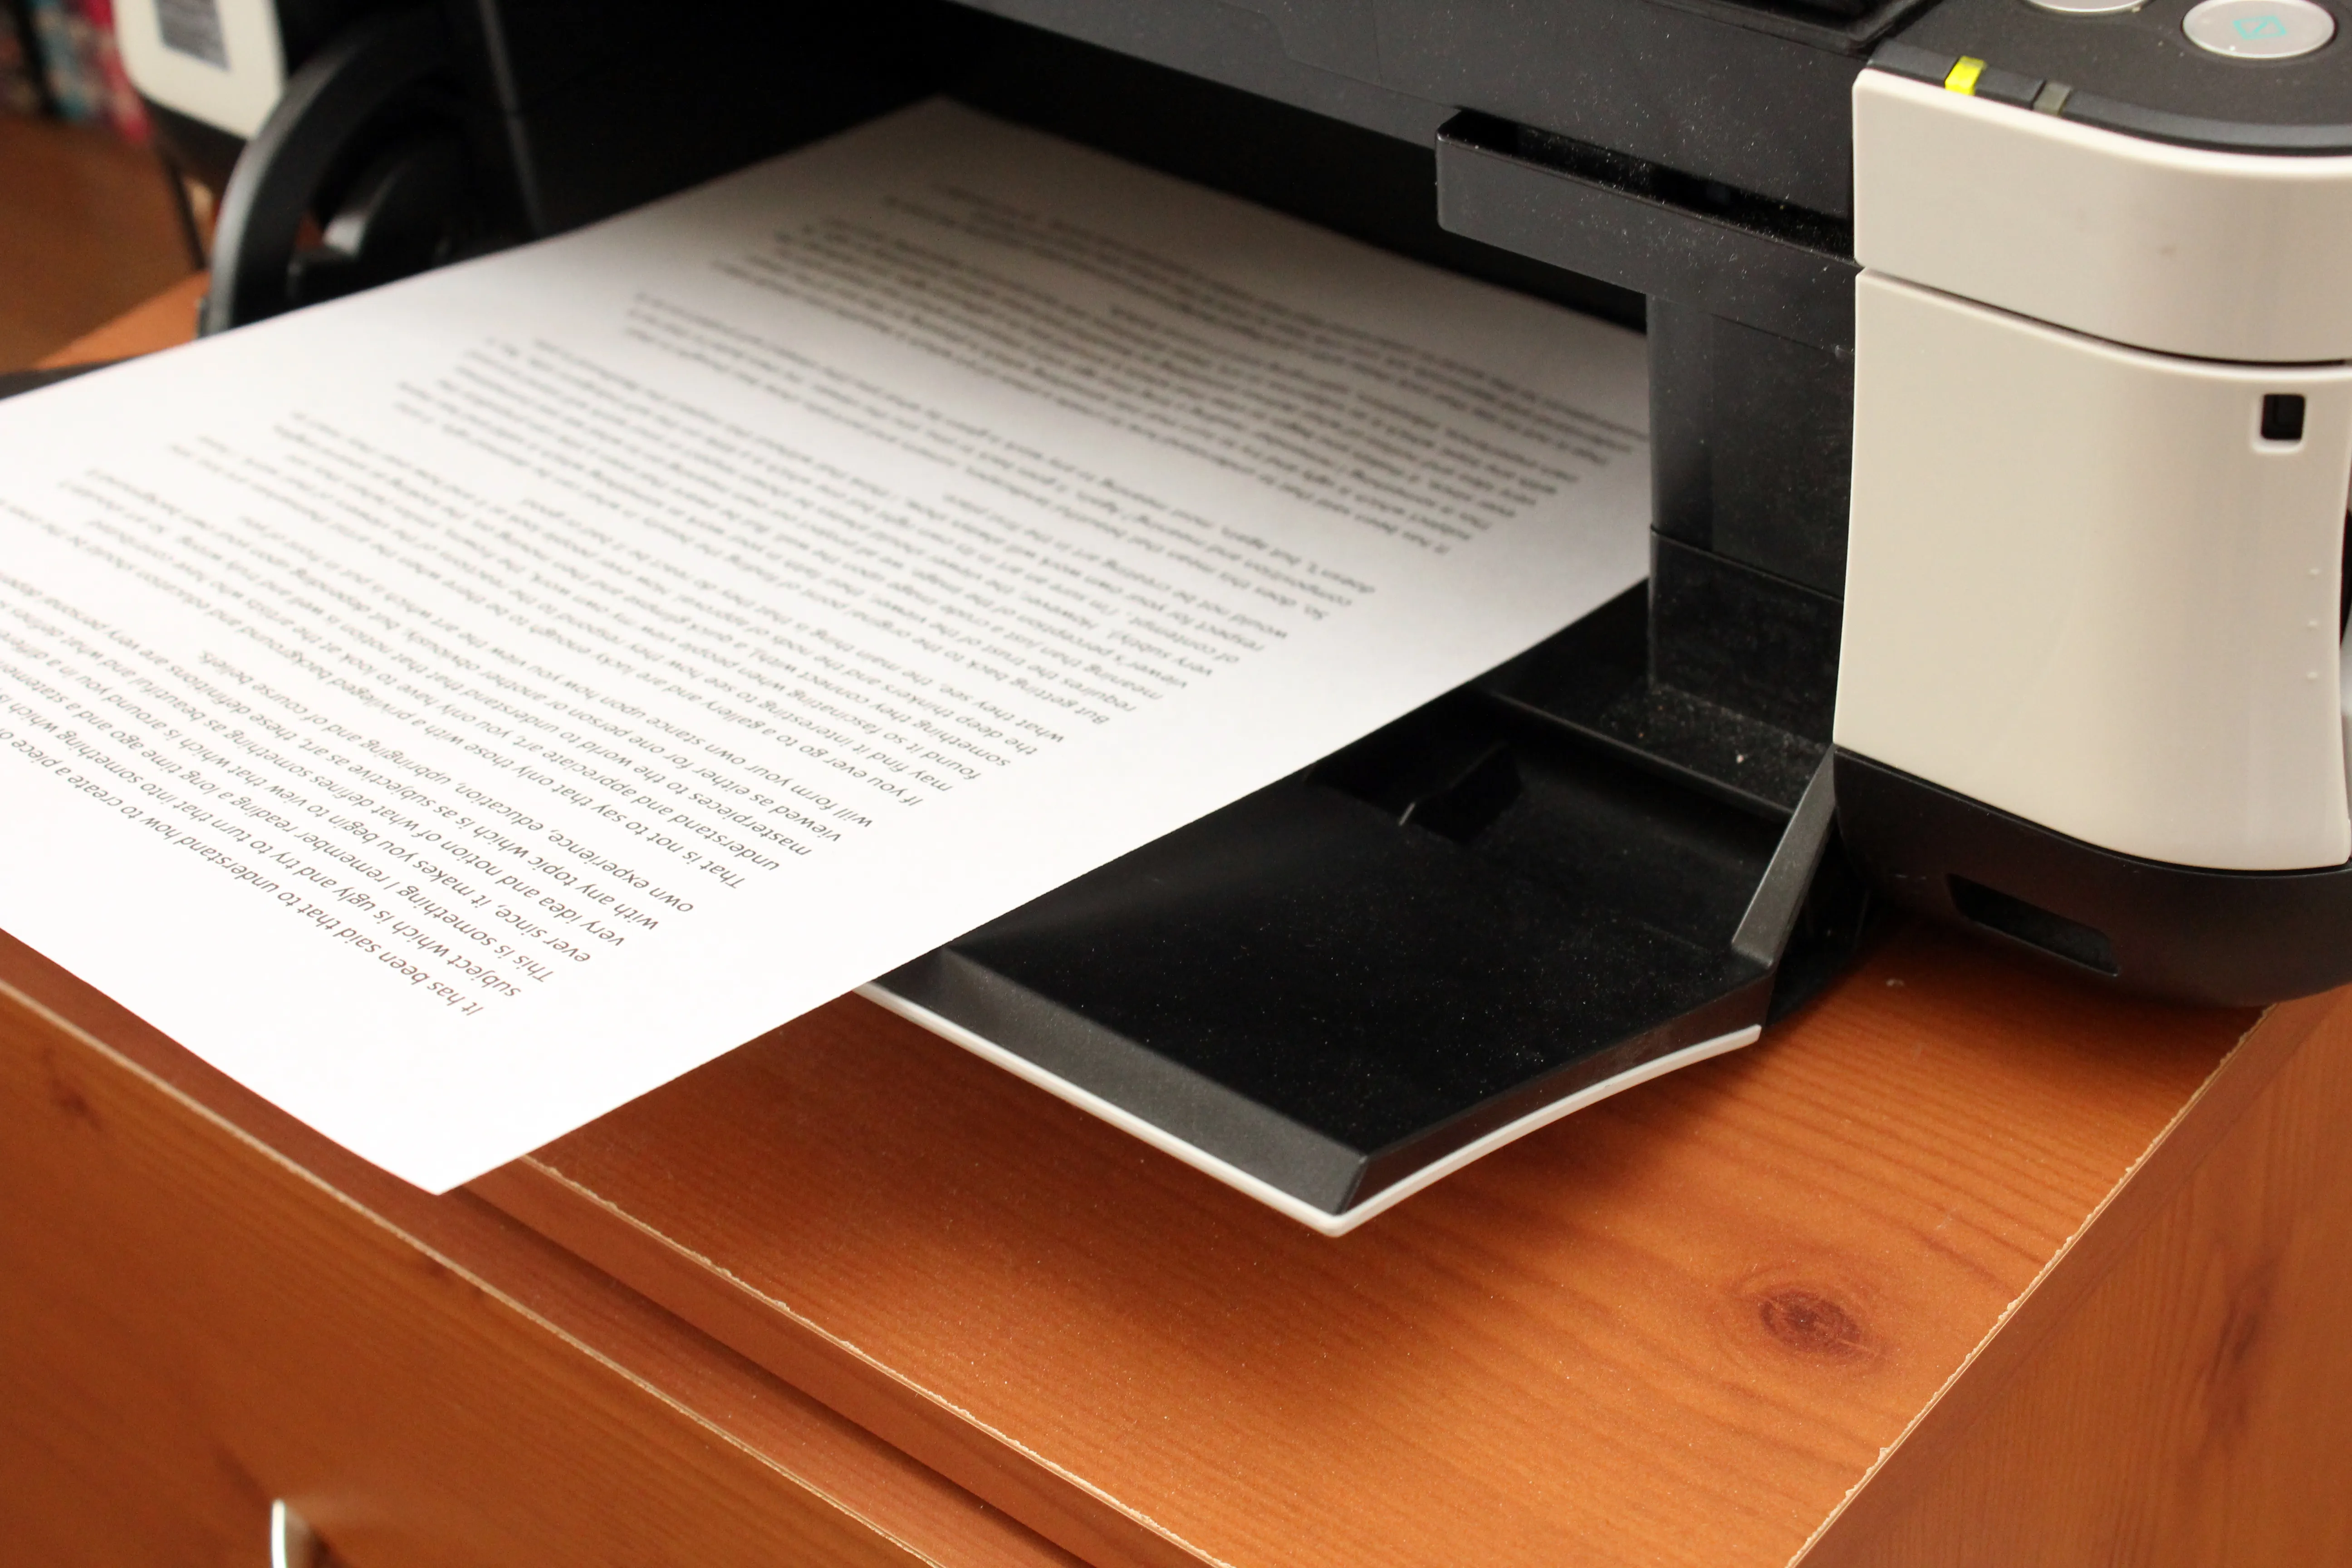 Печать и просмотр документов. Бумага для принтера. Печать документов на принтере. Принтер для печати и сканирования документов. Принтер с документами.